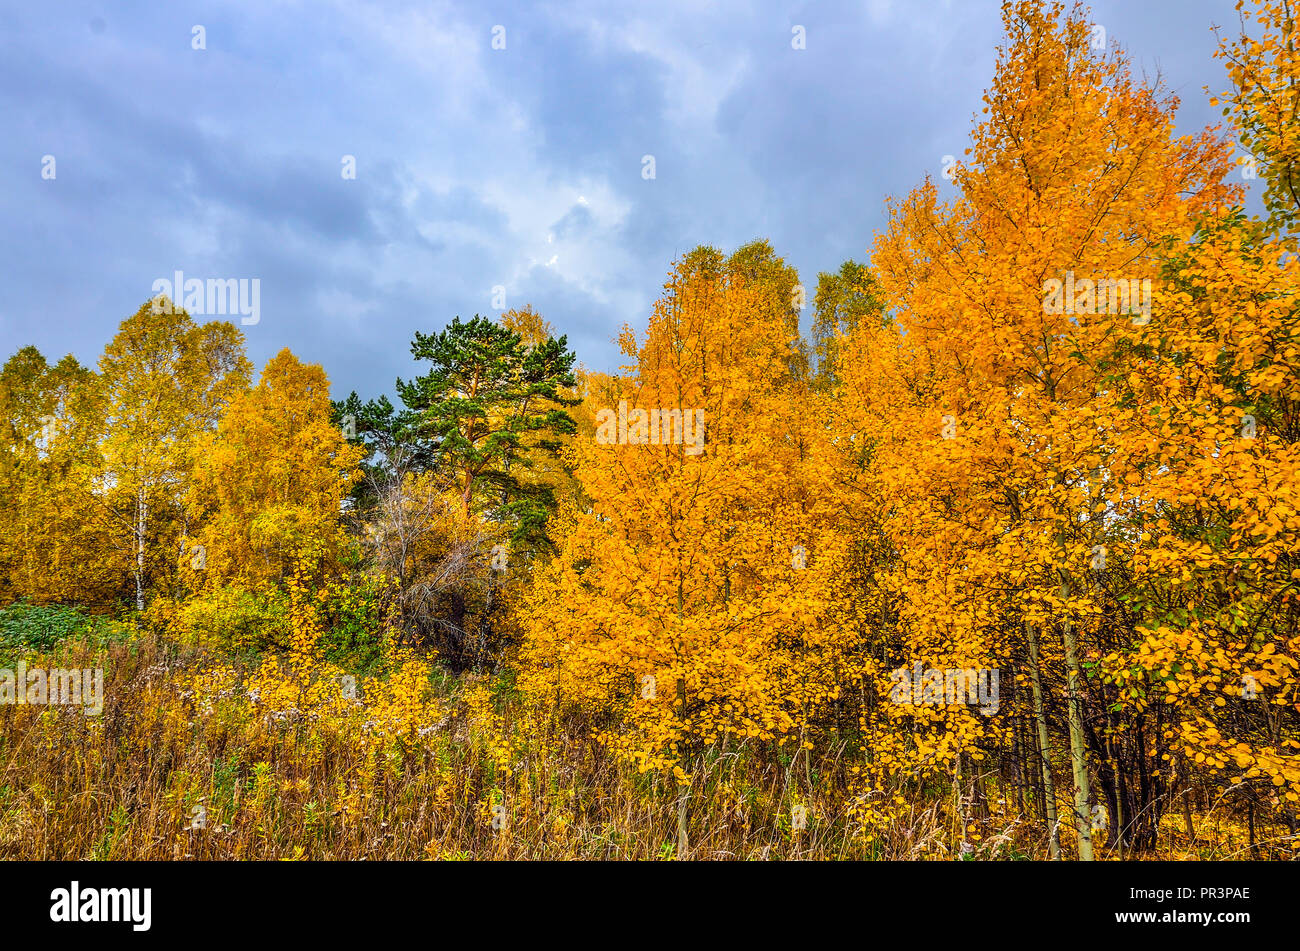 Schöne romantische Landschaft mit goldenen Blätter der Birken im Herbst Wald Jahreszeit - helle Herbst Hintergrund bei warmen und sonnigen Tag im September mit Cloud Stockfoto